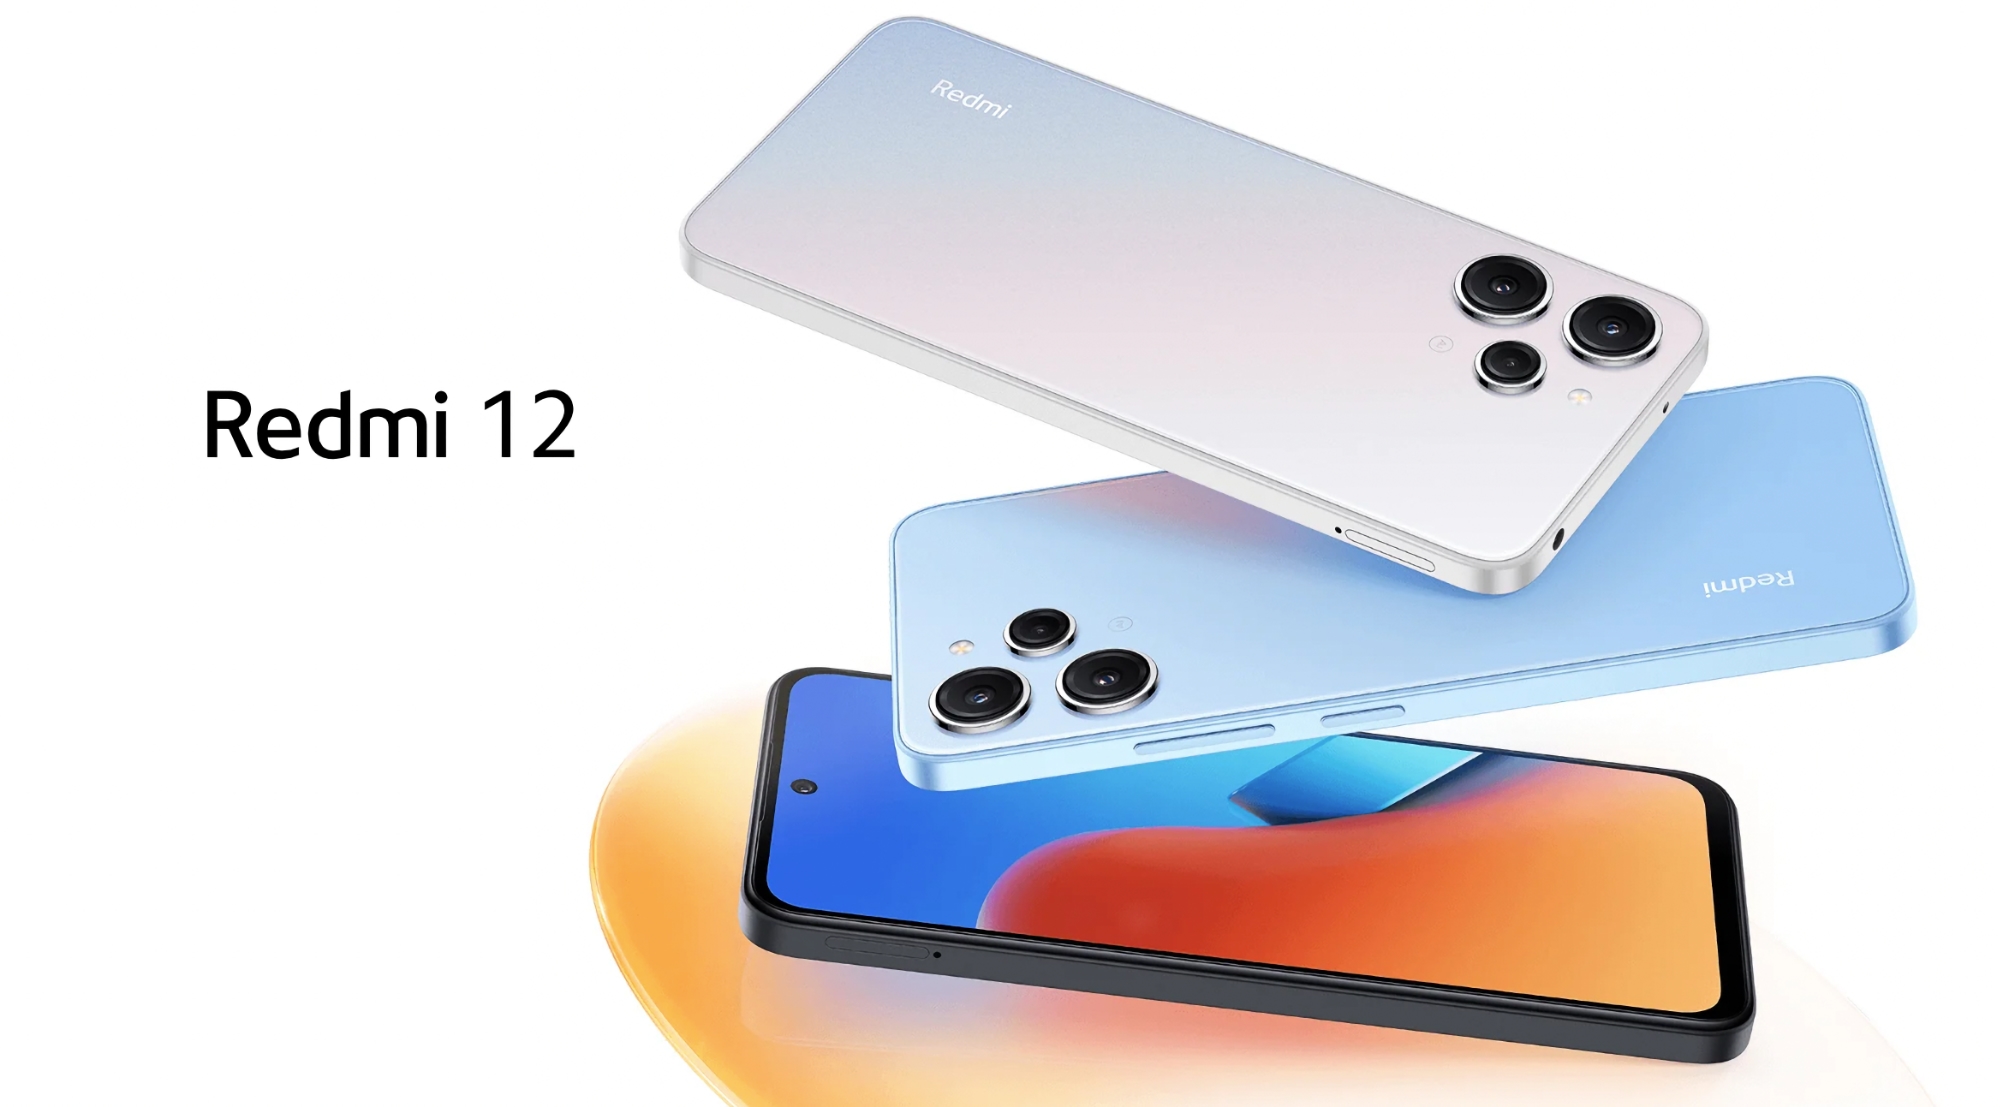 Xiaomi onthult Redmi 12: de nieuwe budgetsmartphone van het bedrijf met een 90Hz-scherm, Helio G88-chip en 50 MP camera